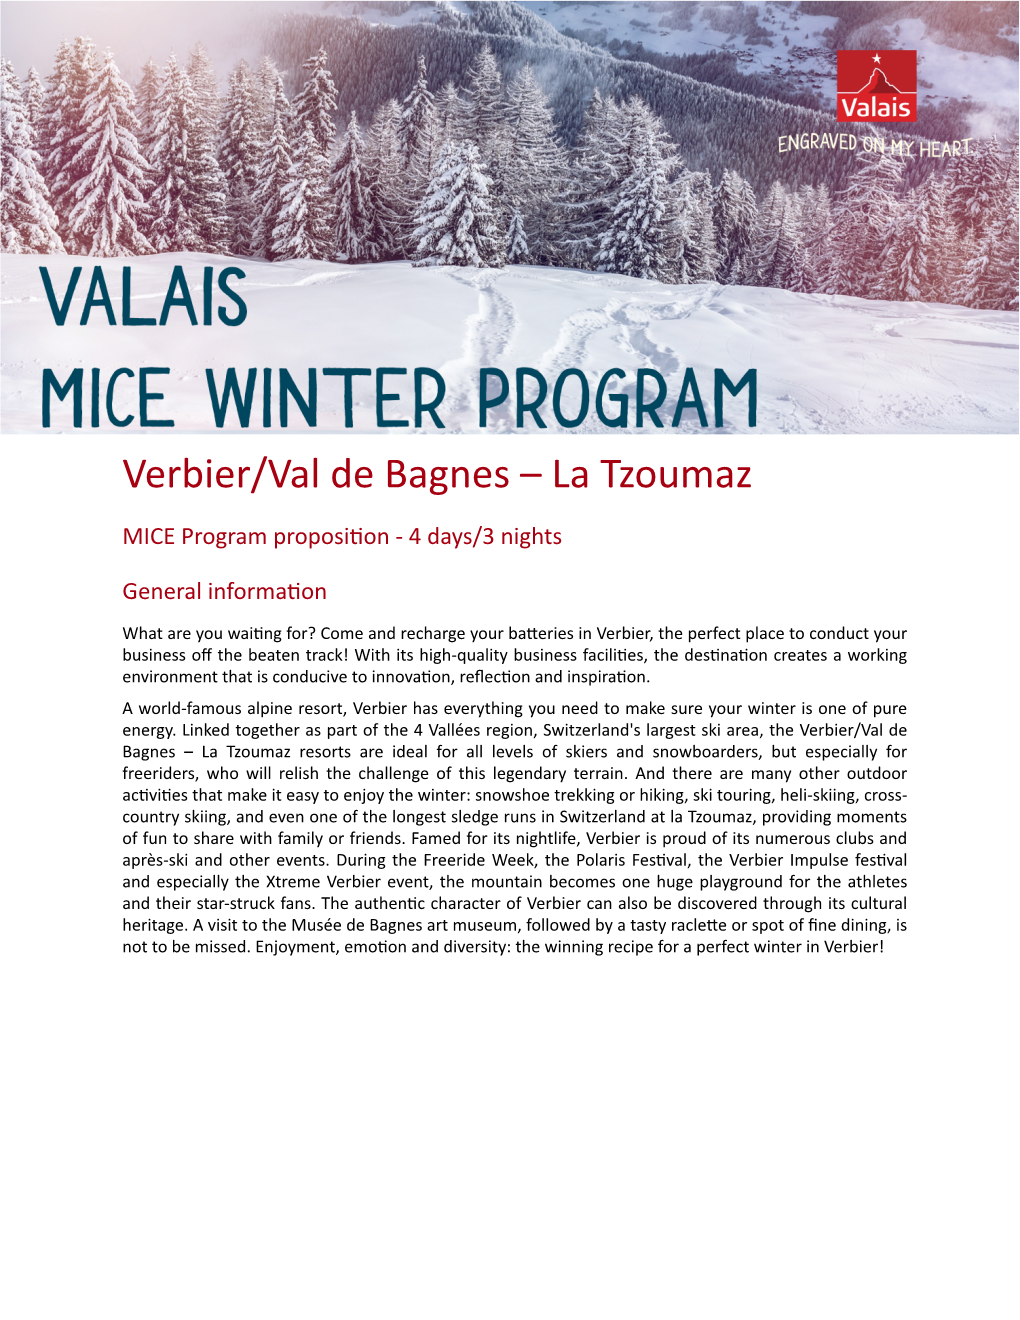 Verbier/Val De Bagnes – La Tzoumaz